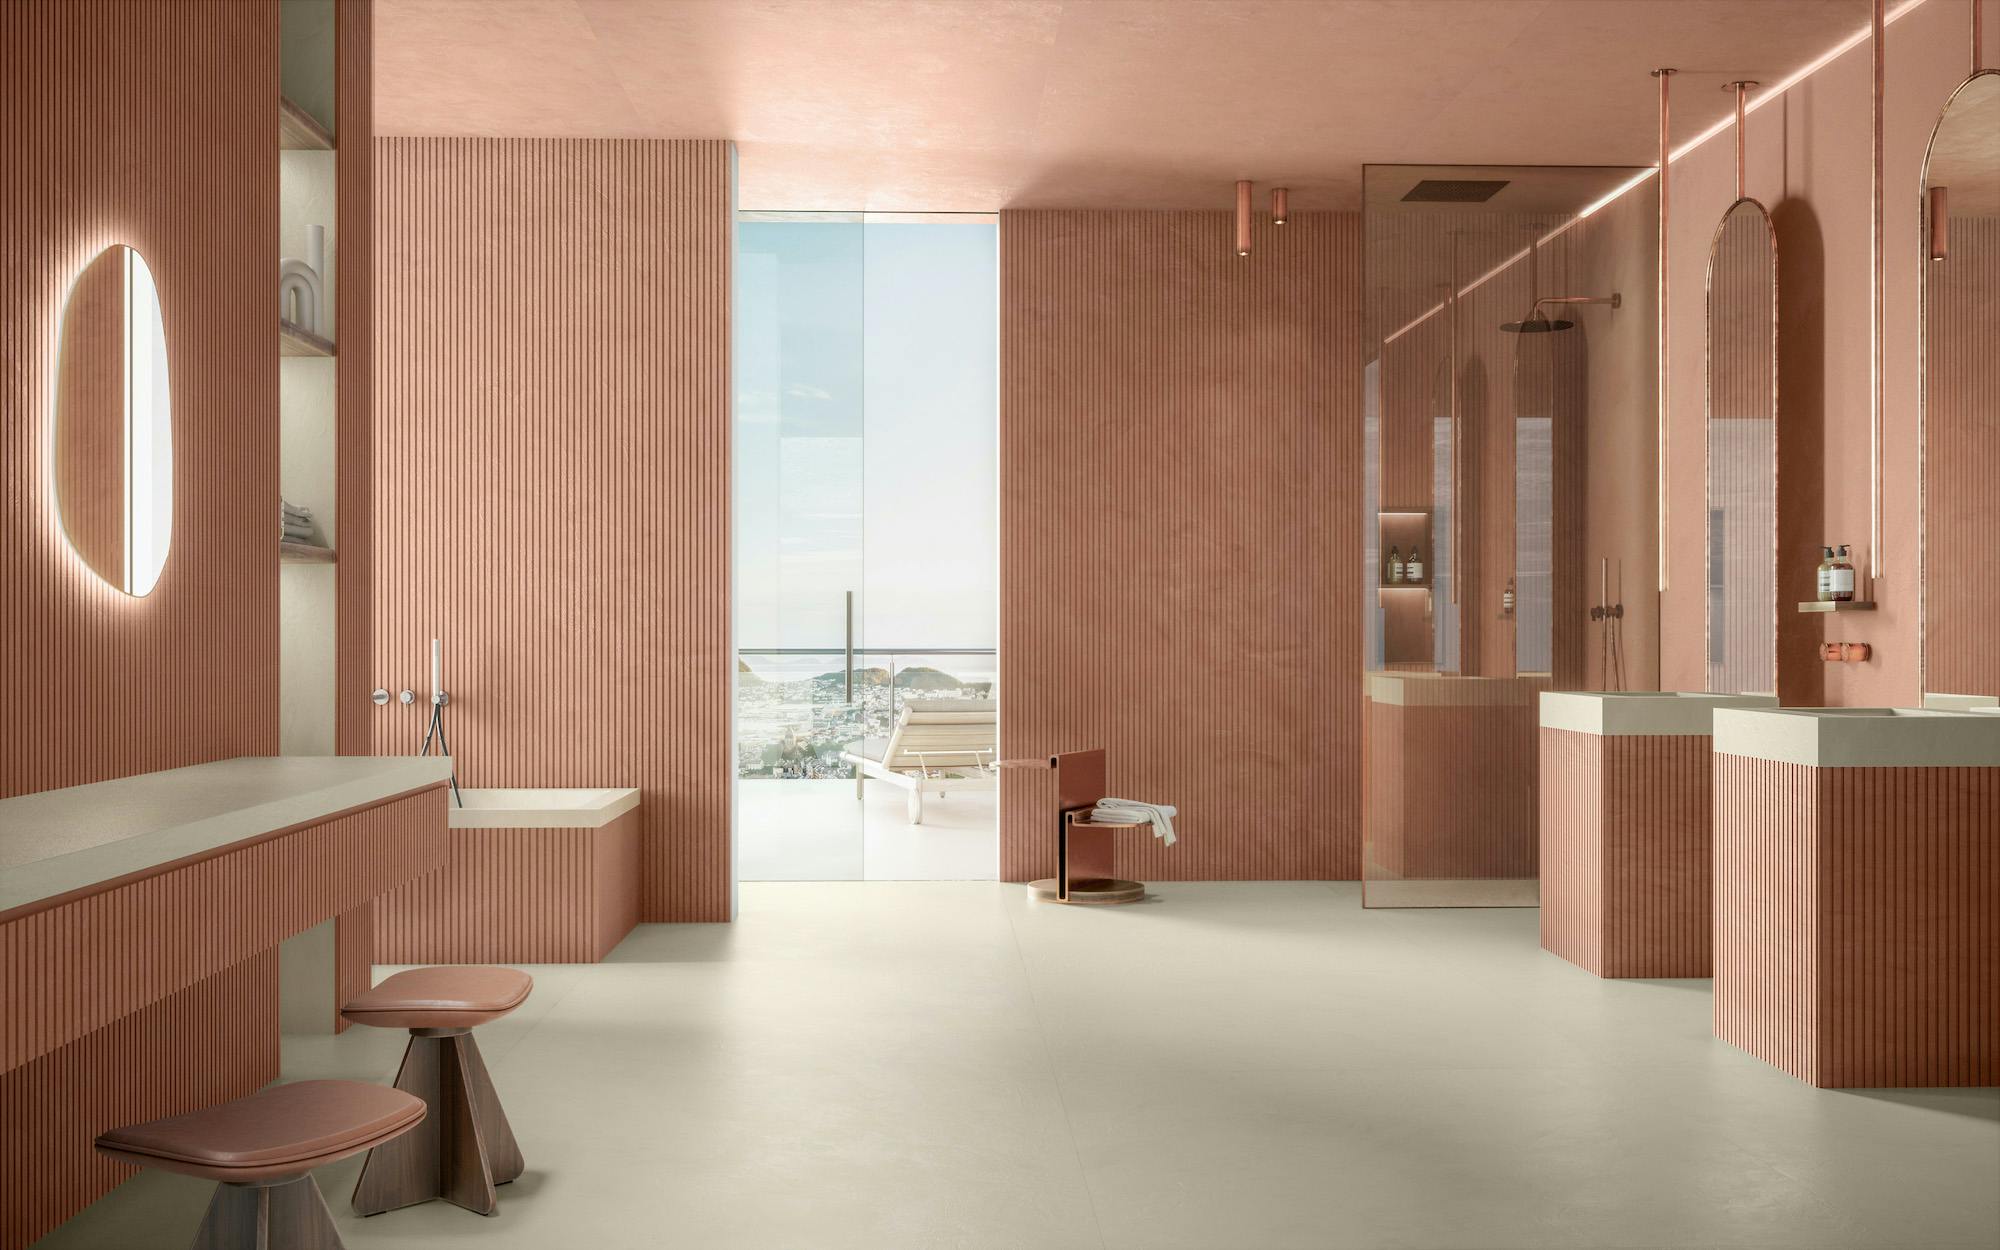 Numero immagine 32 della sezione corrente di {{Grooved textures in the bathroom: a trend on the rise}} di Cosentino Italia